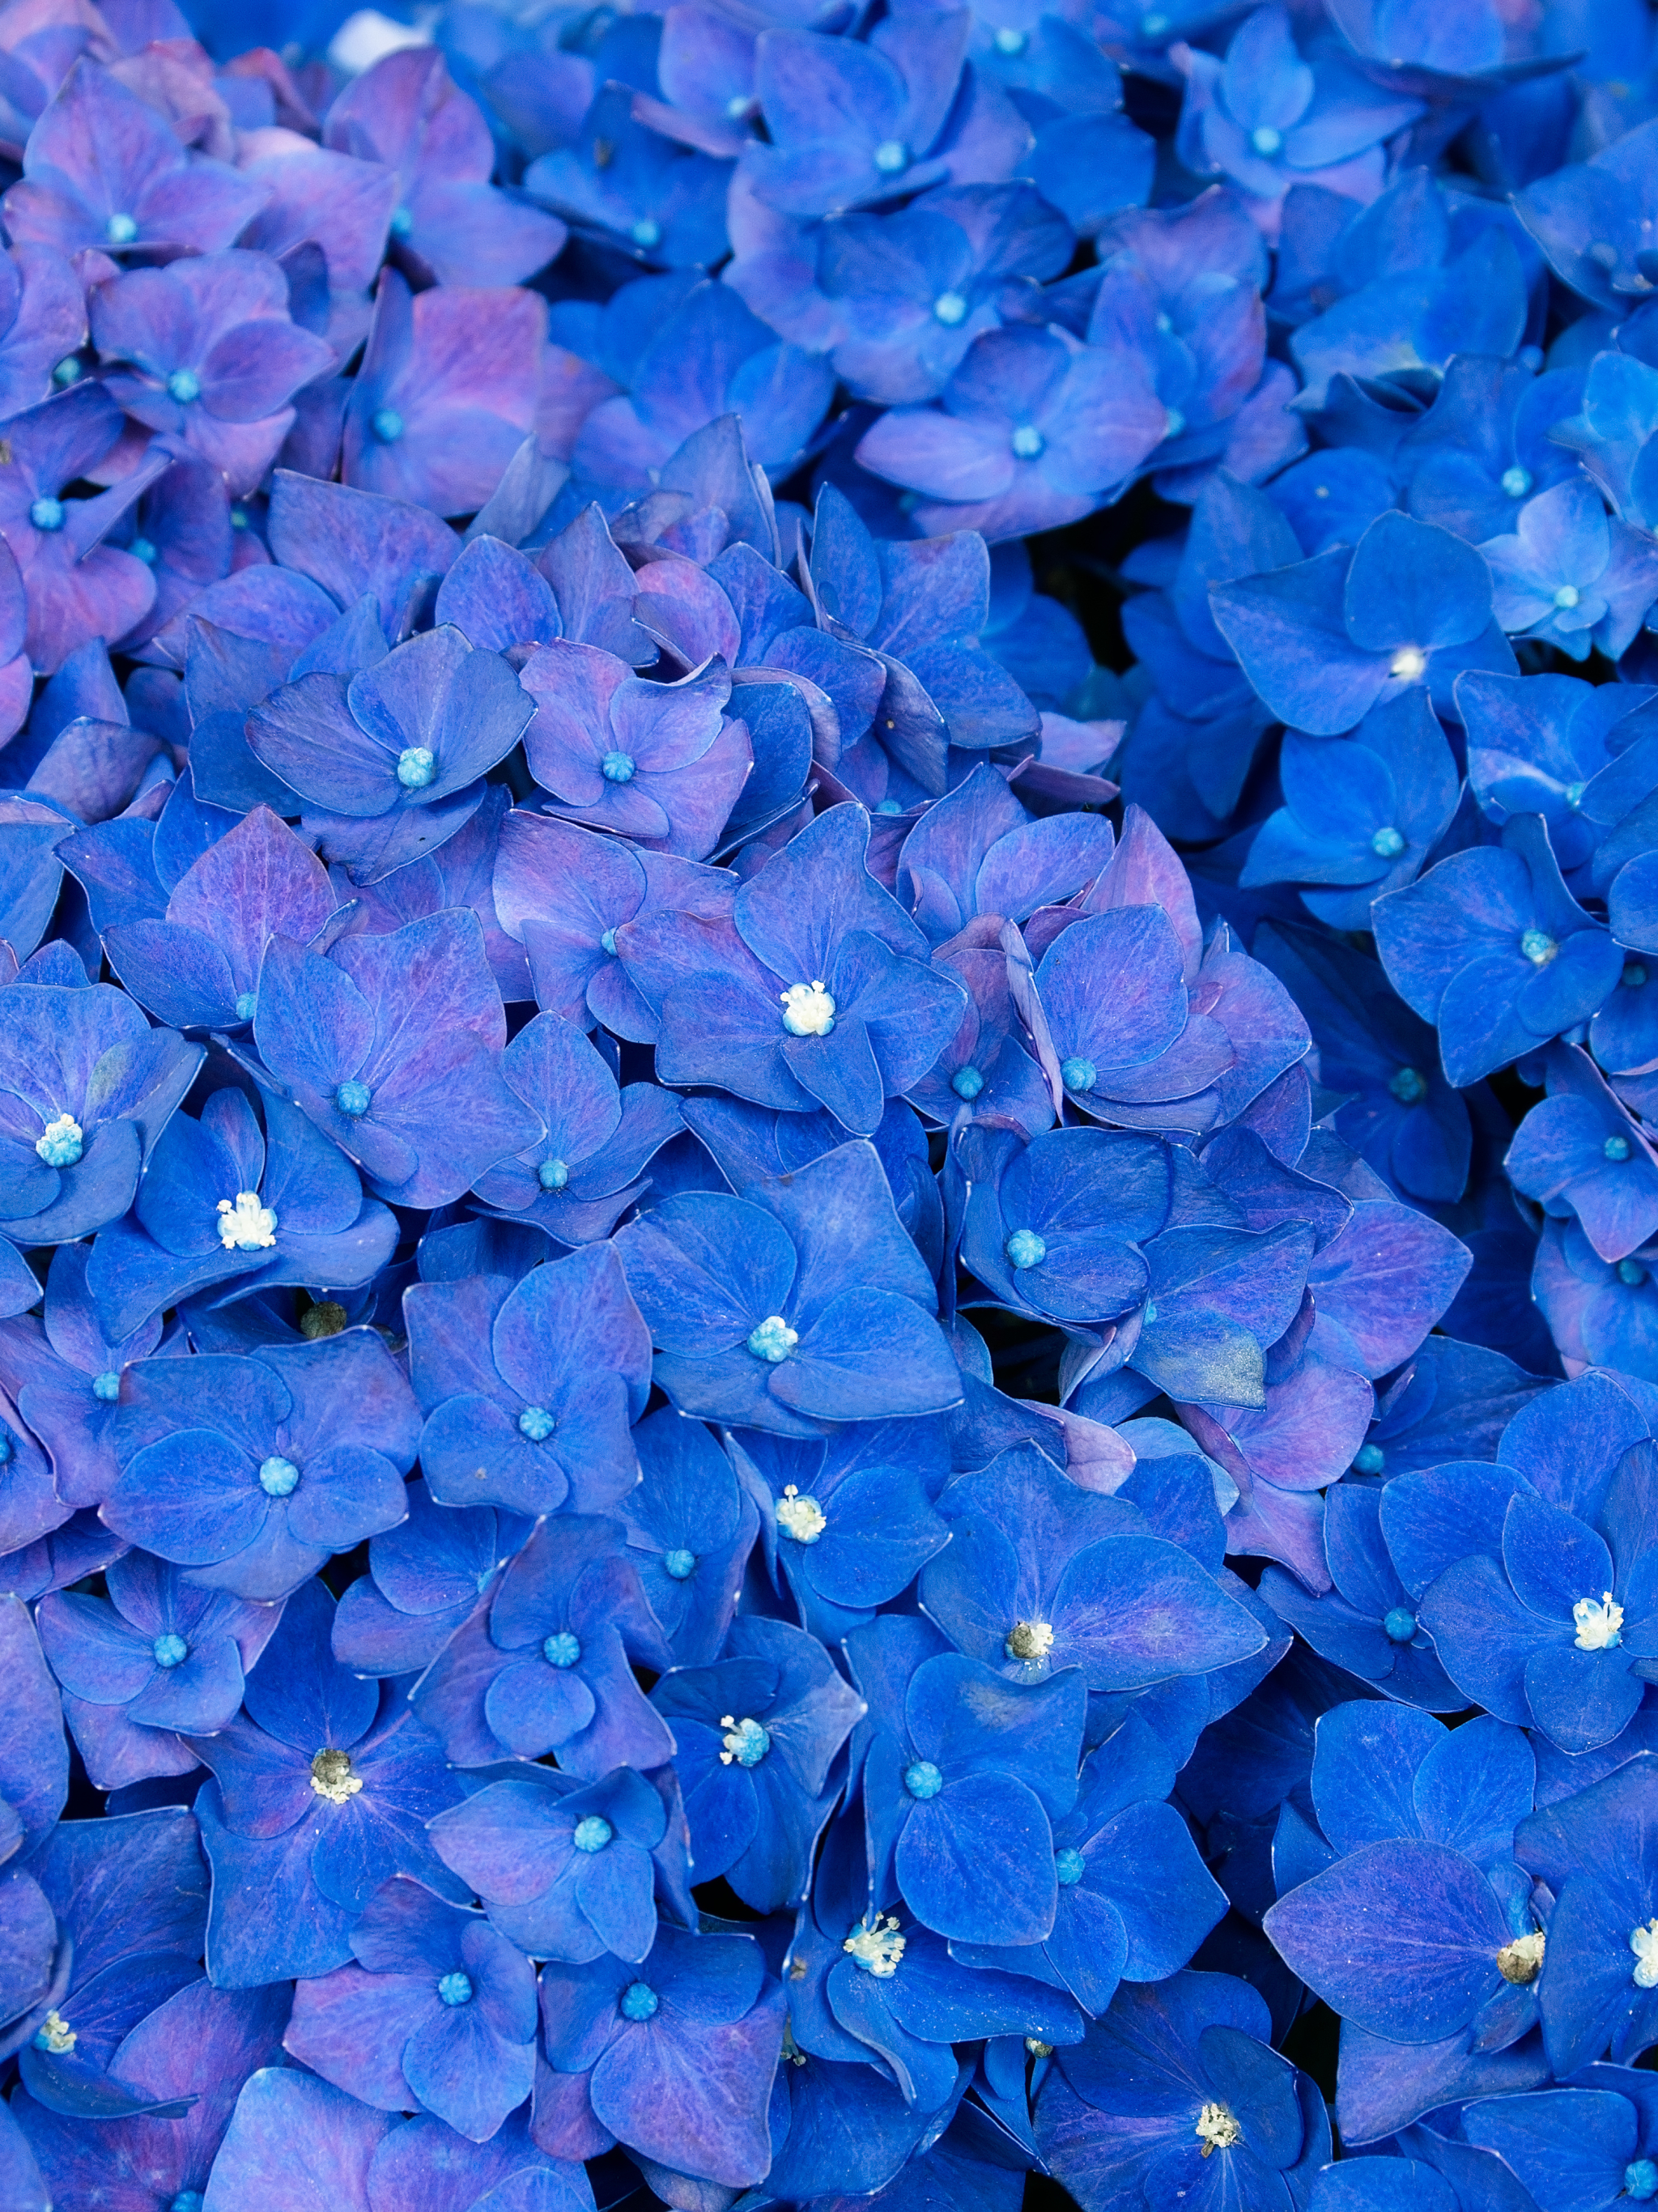 Descarga gratuita de fondo de pantalla para móvil de Flores, Flor, Hortensia, Tierra/naturaleza, Flor Azul.